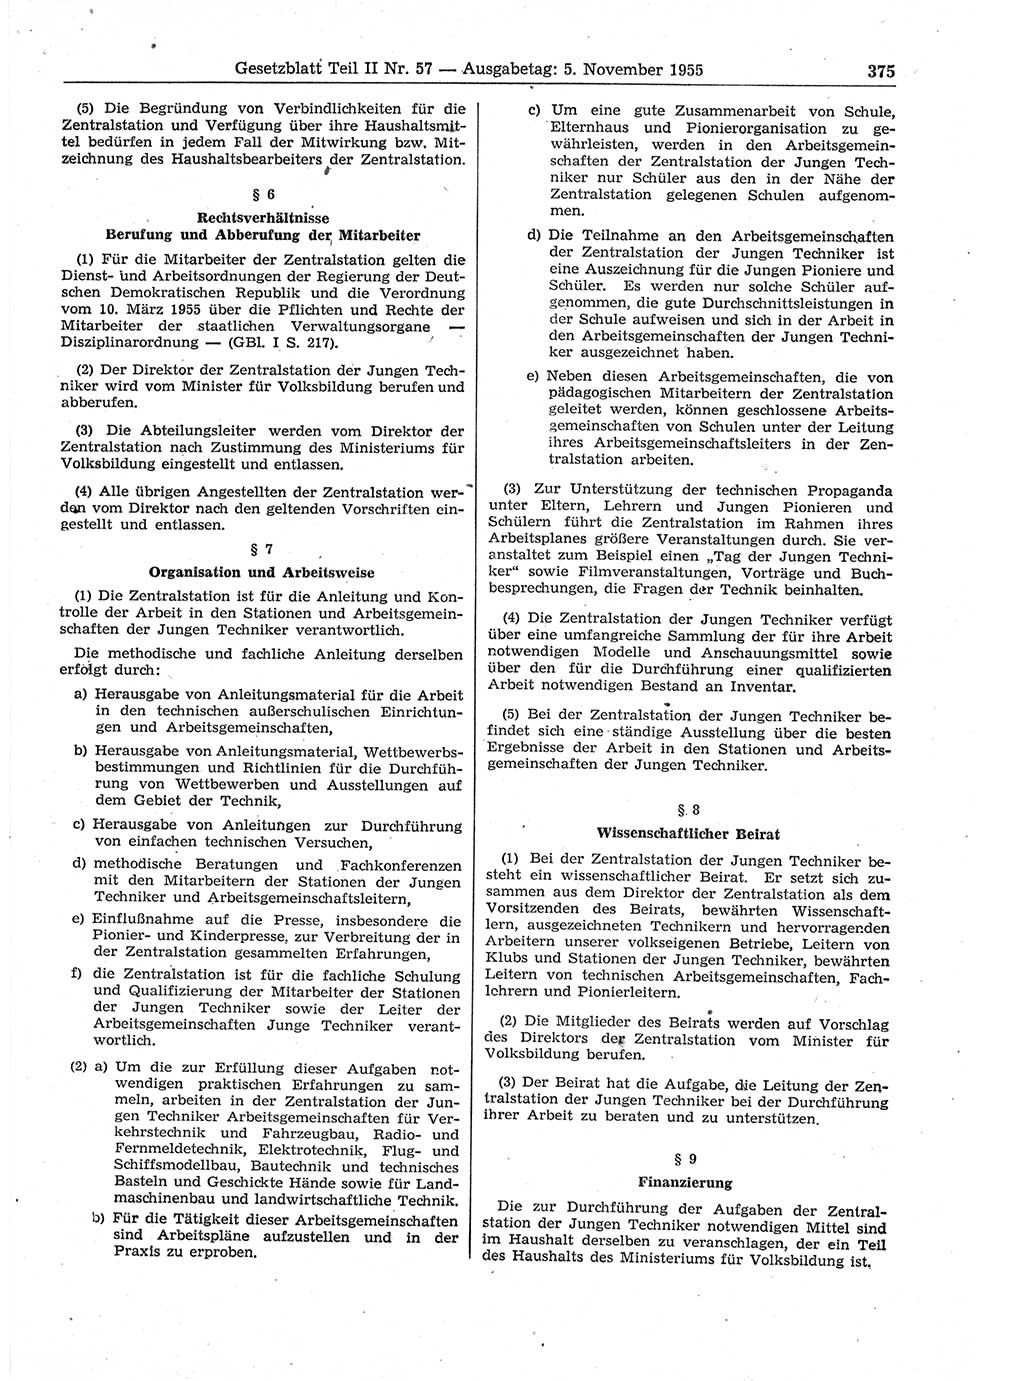 Gesetzblatt (GBl.) der Deutschen Demokratischen Republik (DDR) Teil ⅠⅠ 1955, Seite 375 (GBl. DDR ⅠⅠ 1955, S. 375)